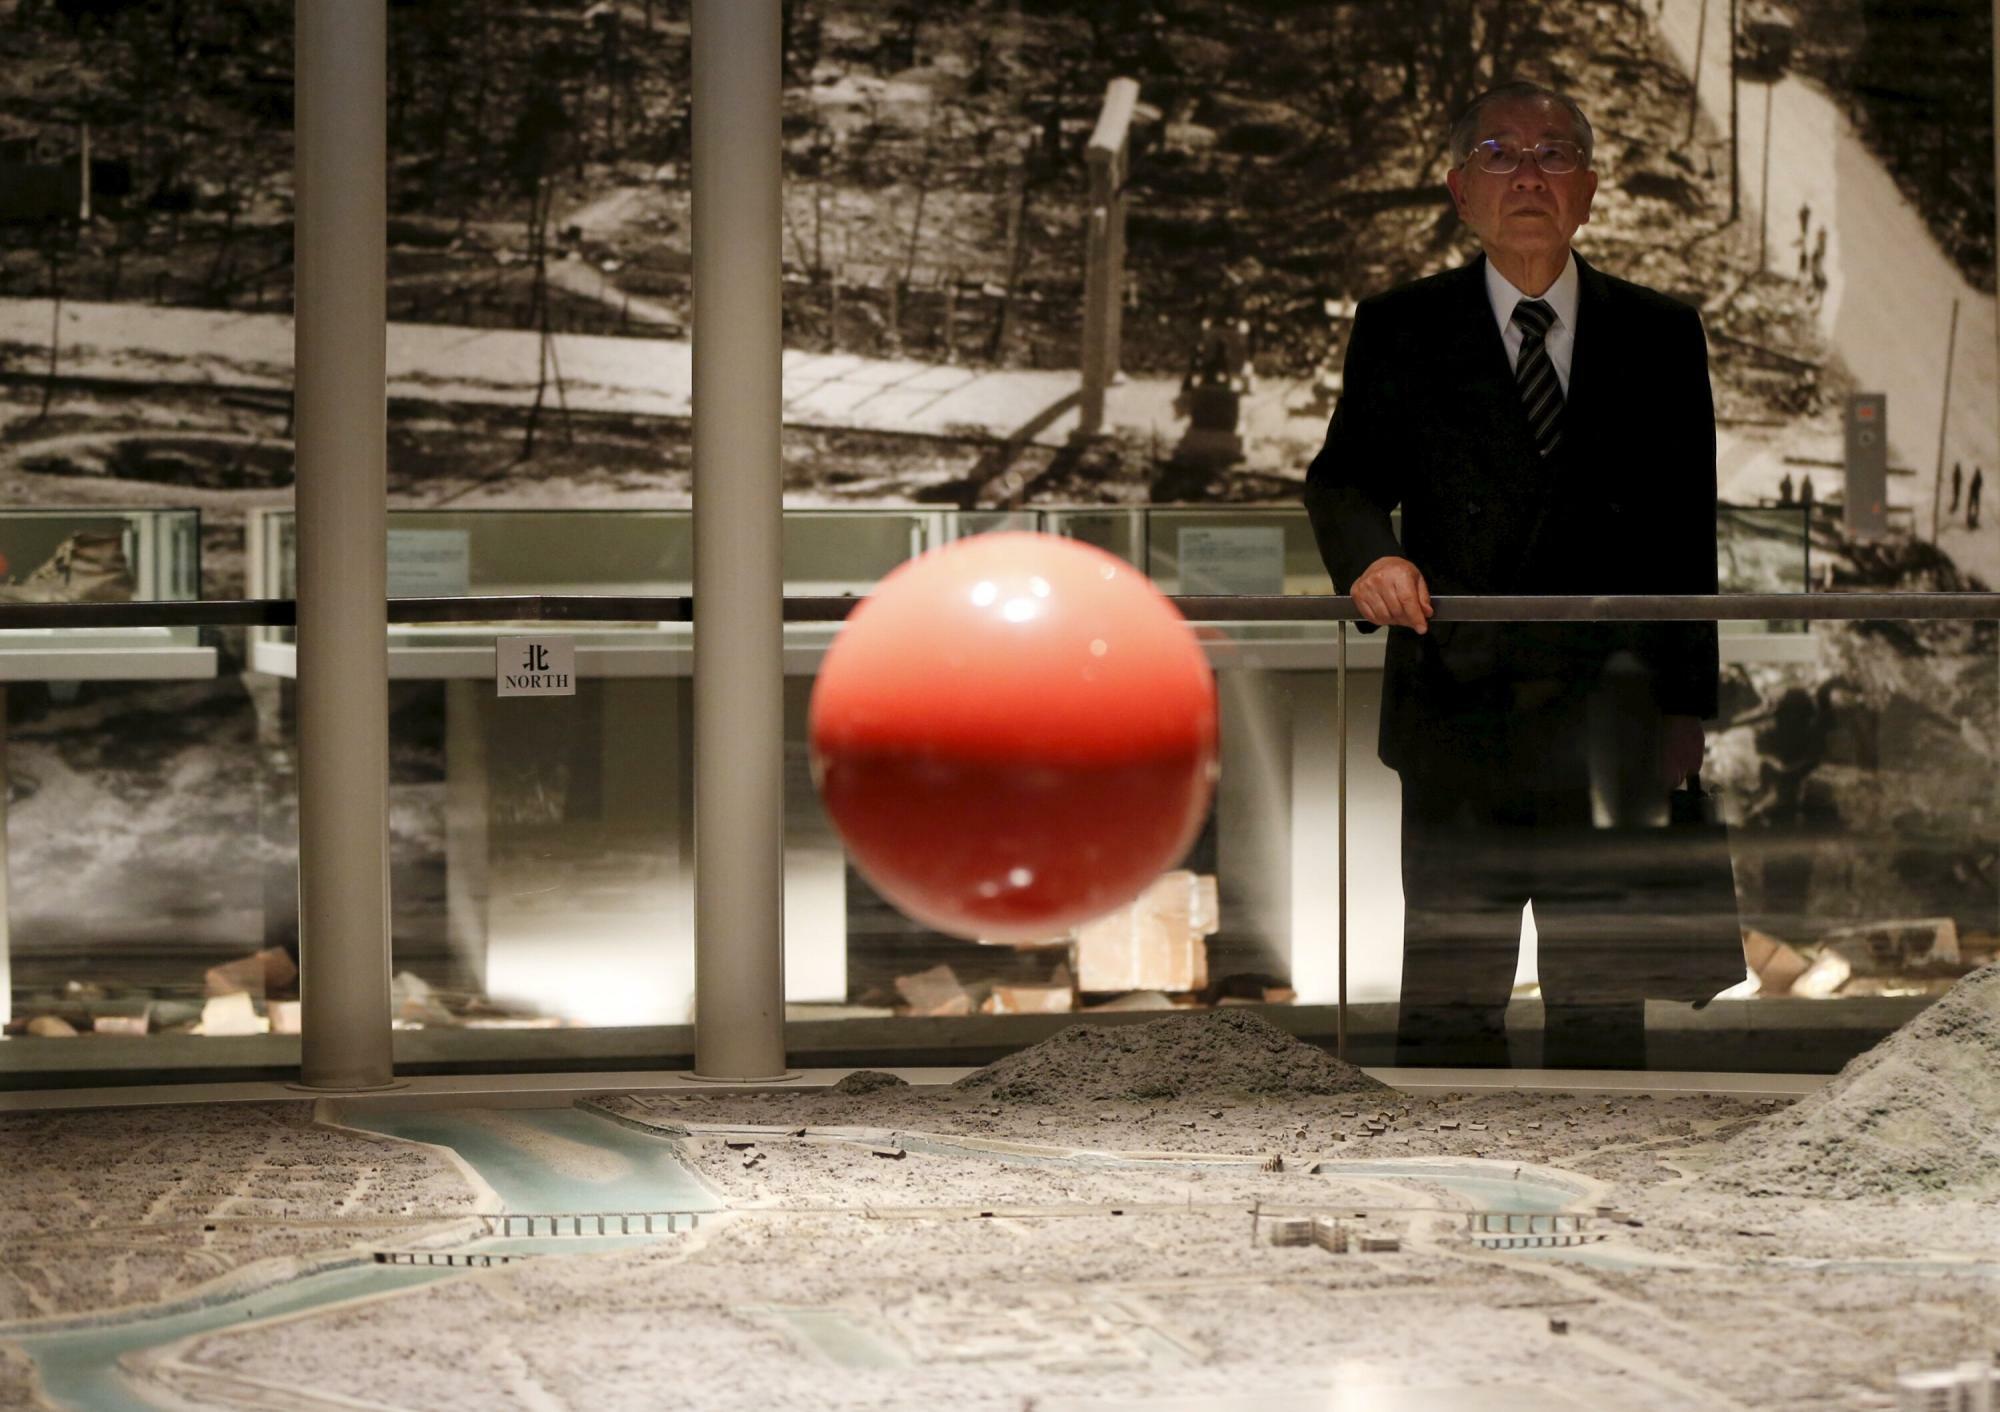 広島市原爆資料館にある、広島原爆炸裂の際の「火球」の模型と広域ジオラマ